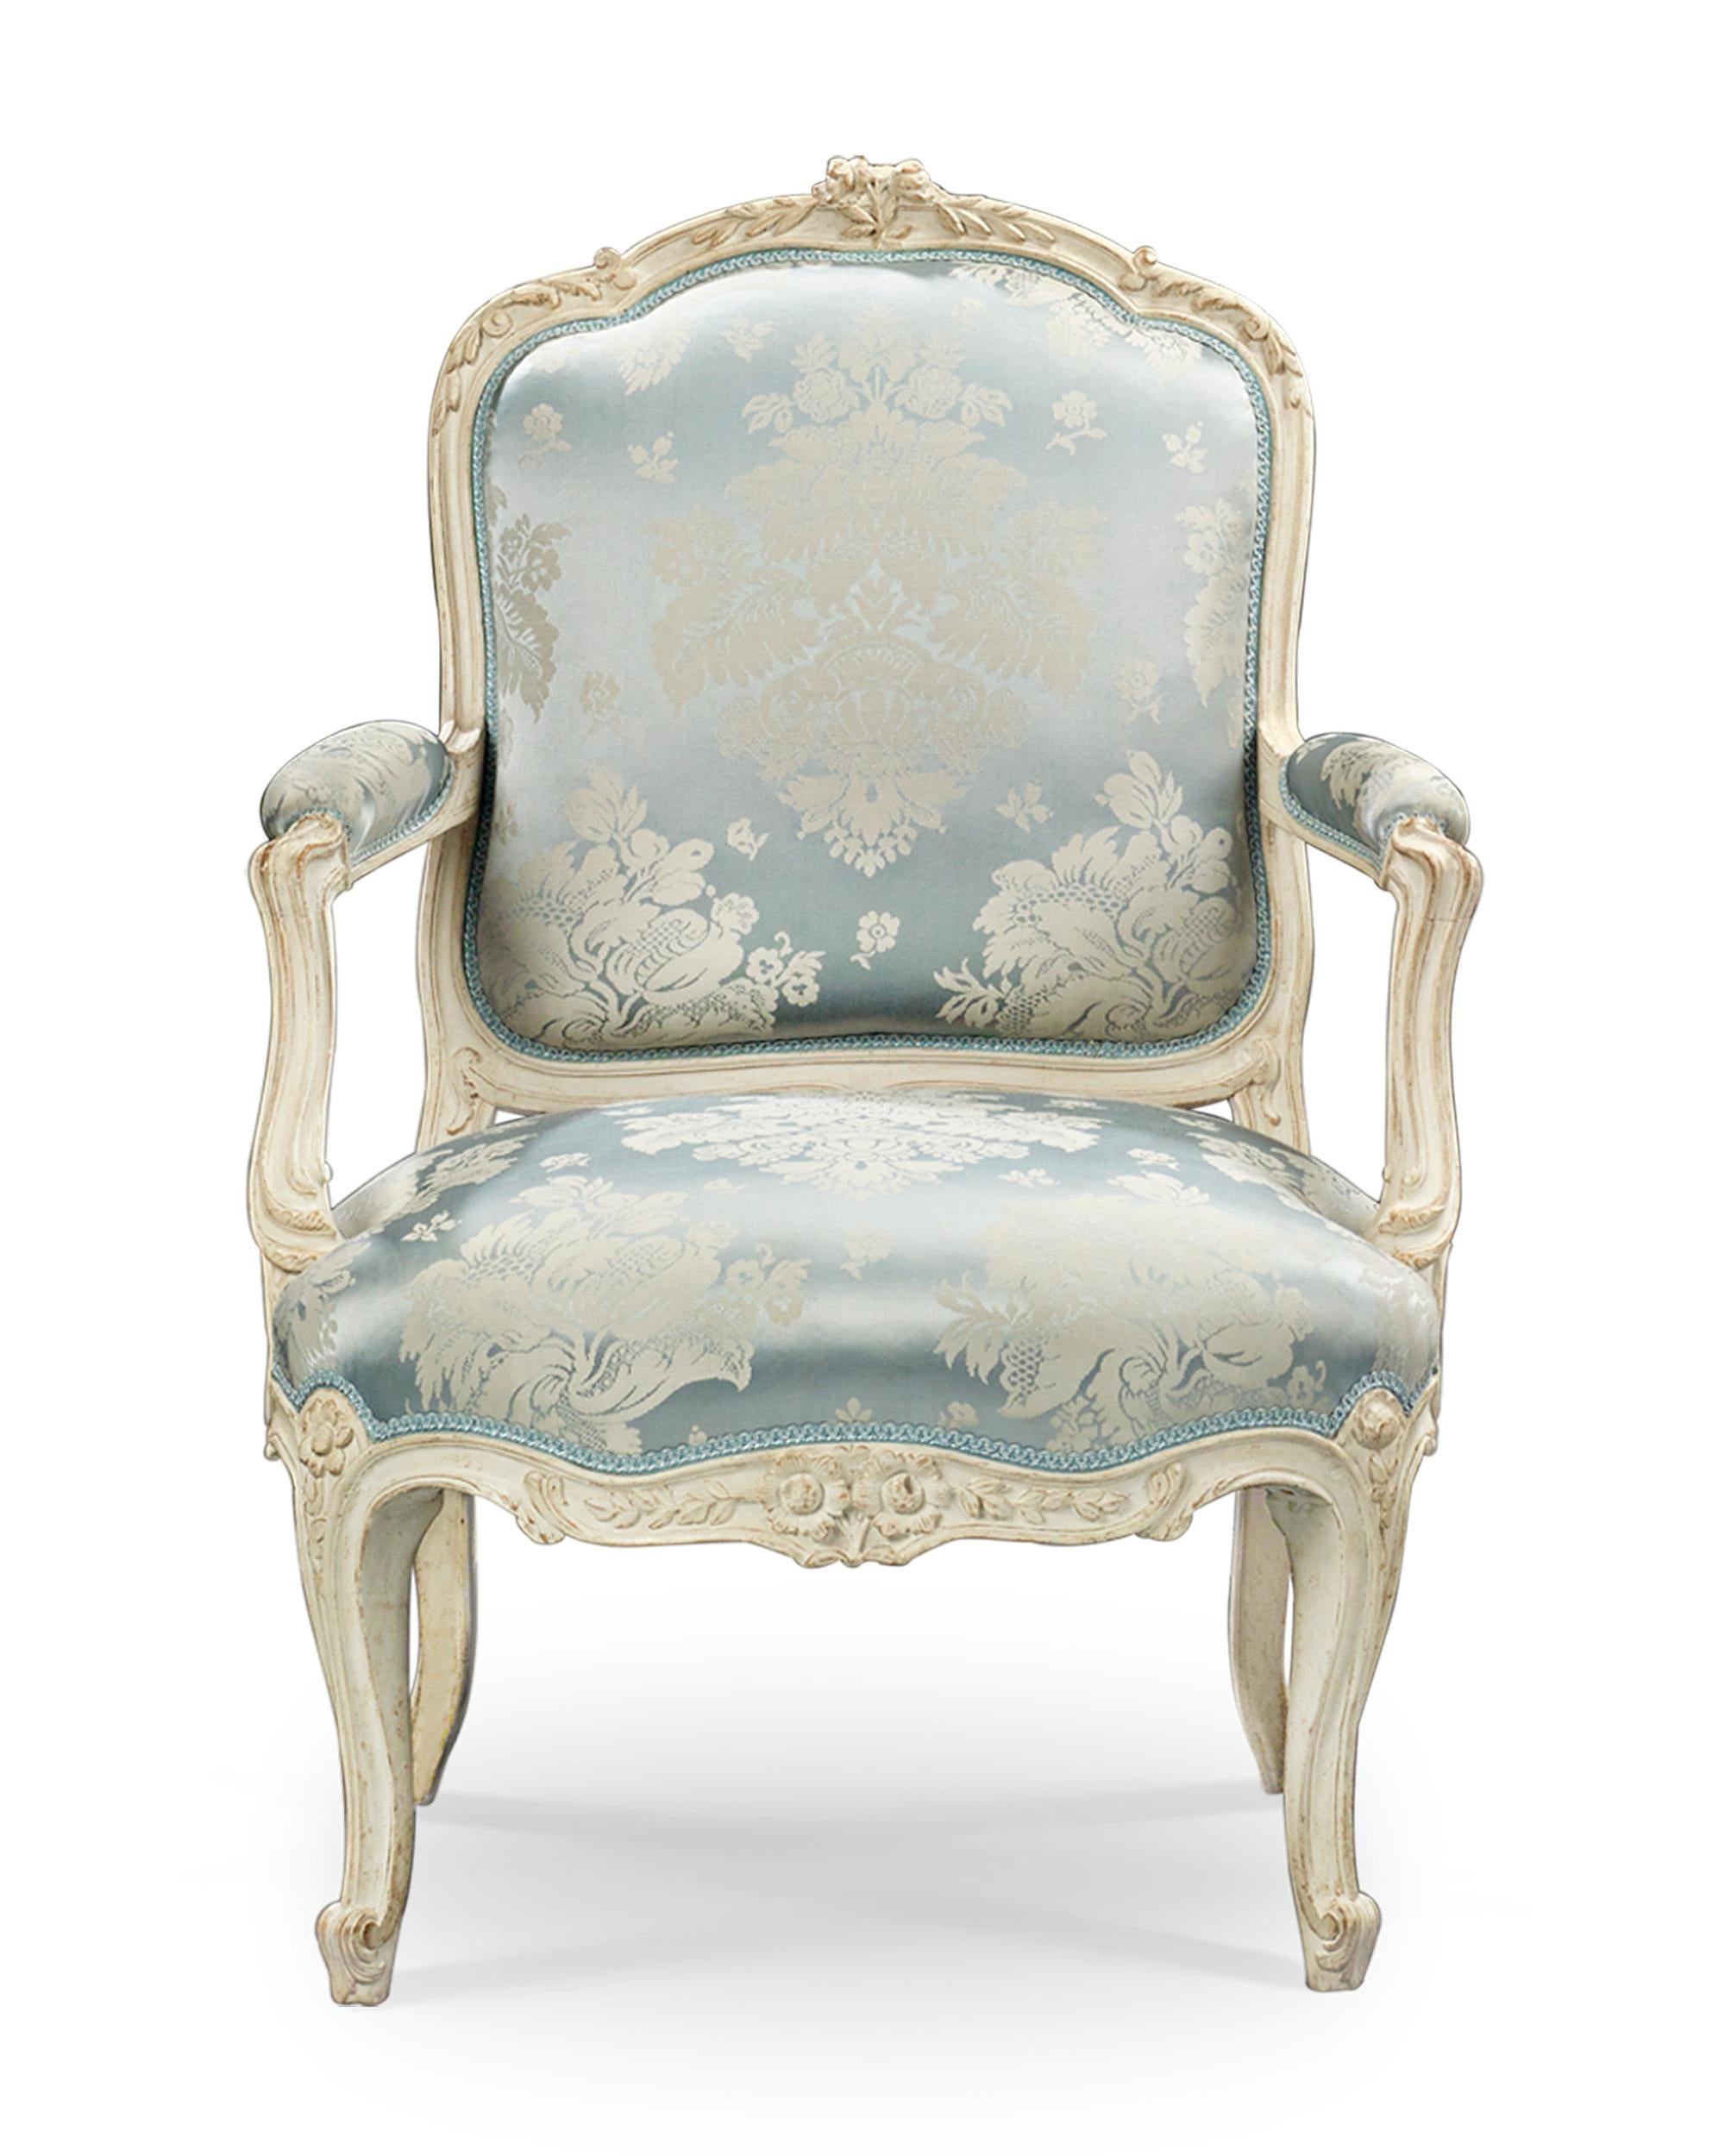 Dieses beeindruckende Paar französischer Sessel zeigt die Pracht und Eleganz der Epoche Louis XV. Die Stühle wurden von dem berühmten Künstler Jean-René Nadal l'Ainé (1733-1783) gefertigt und zeichnen sich durch anmutige, geschwungene Linien und